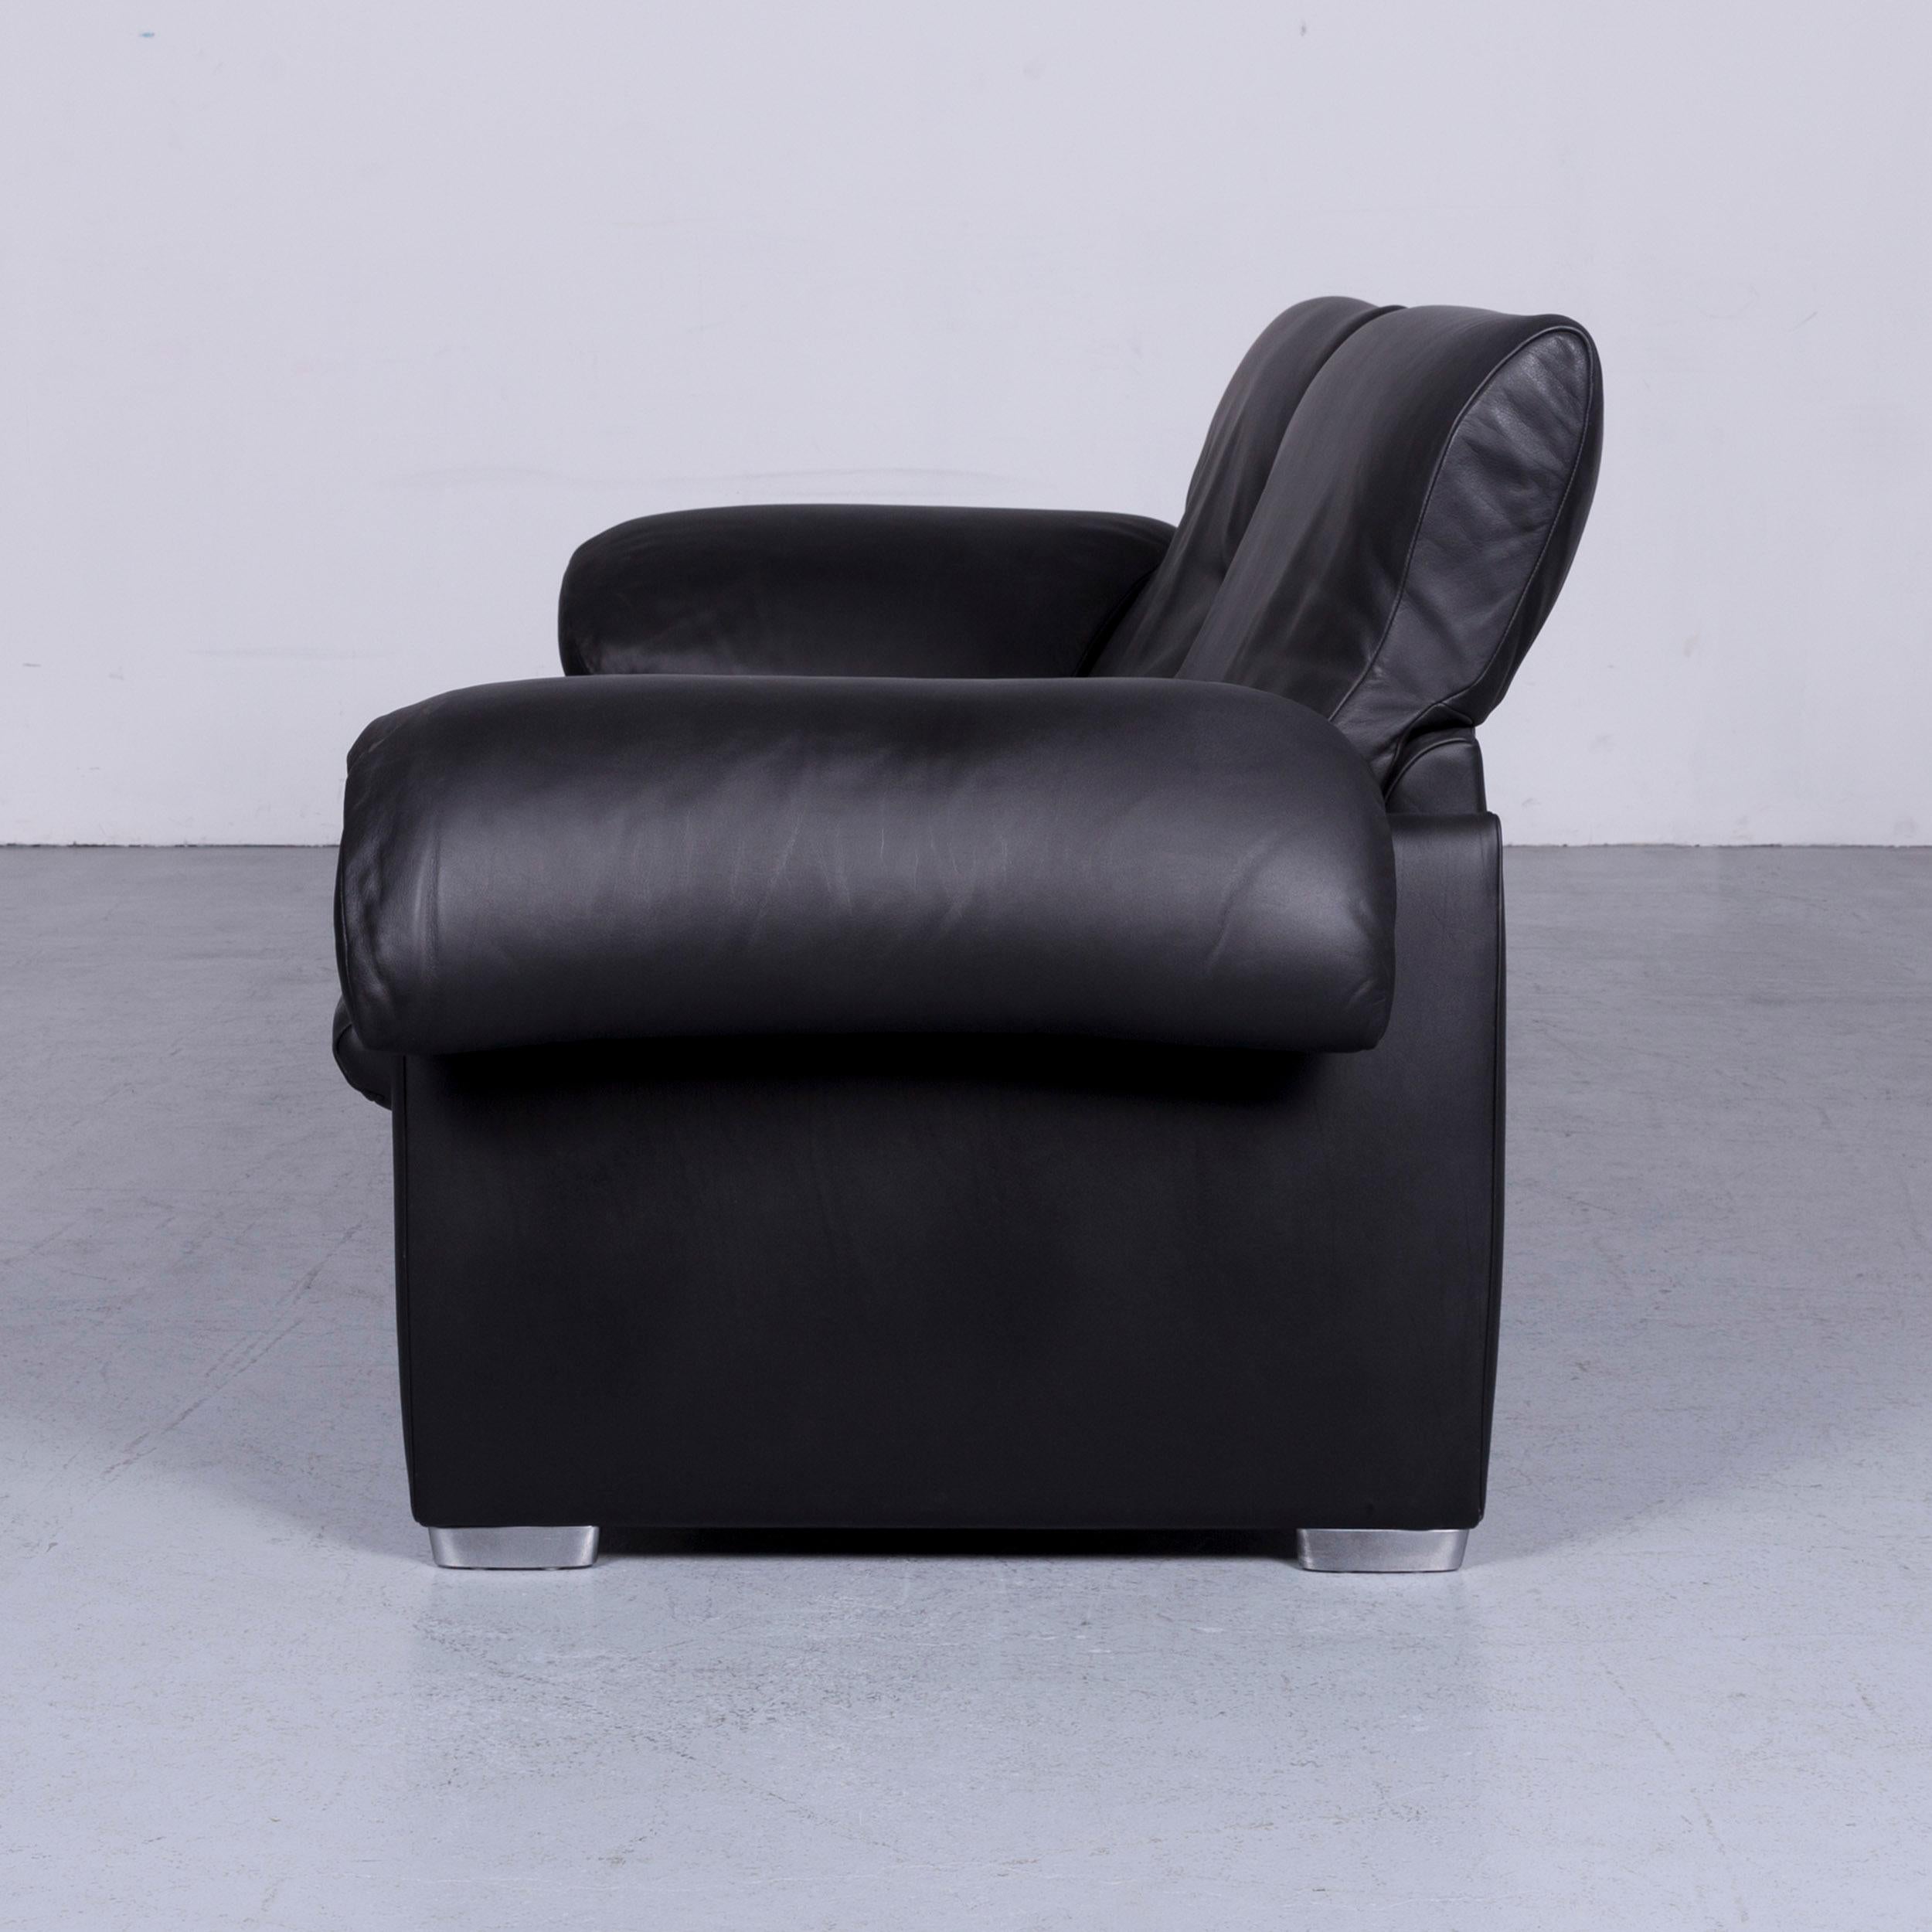 De Sede Ds 10 Designer Sofa Black Leather Three-Seat Couch 5